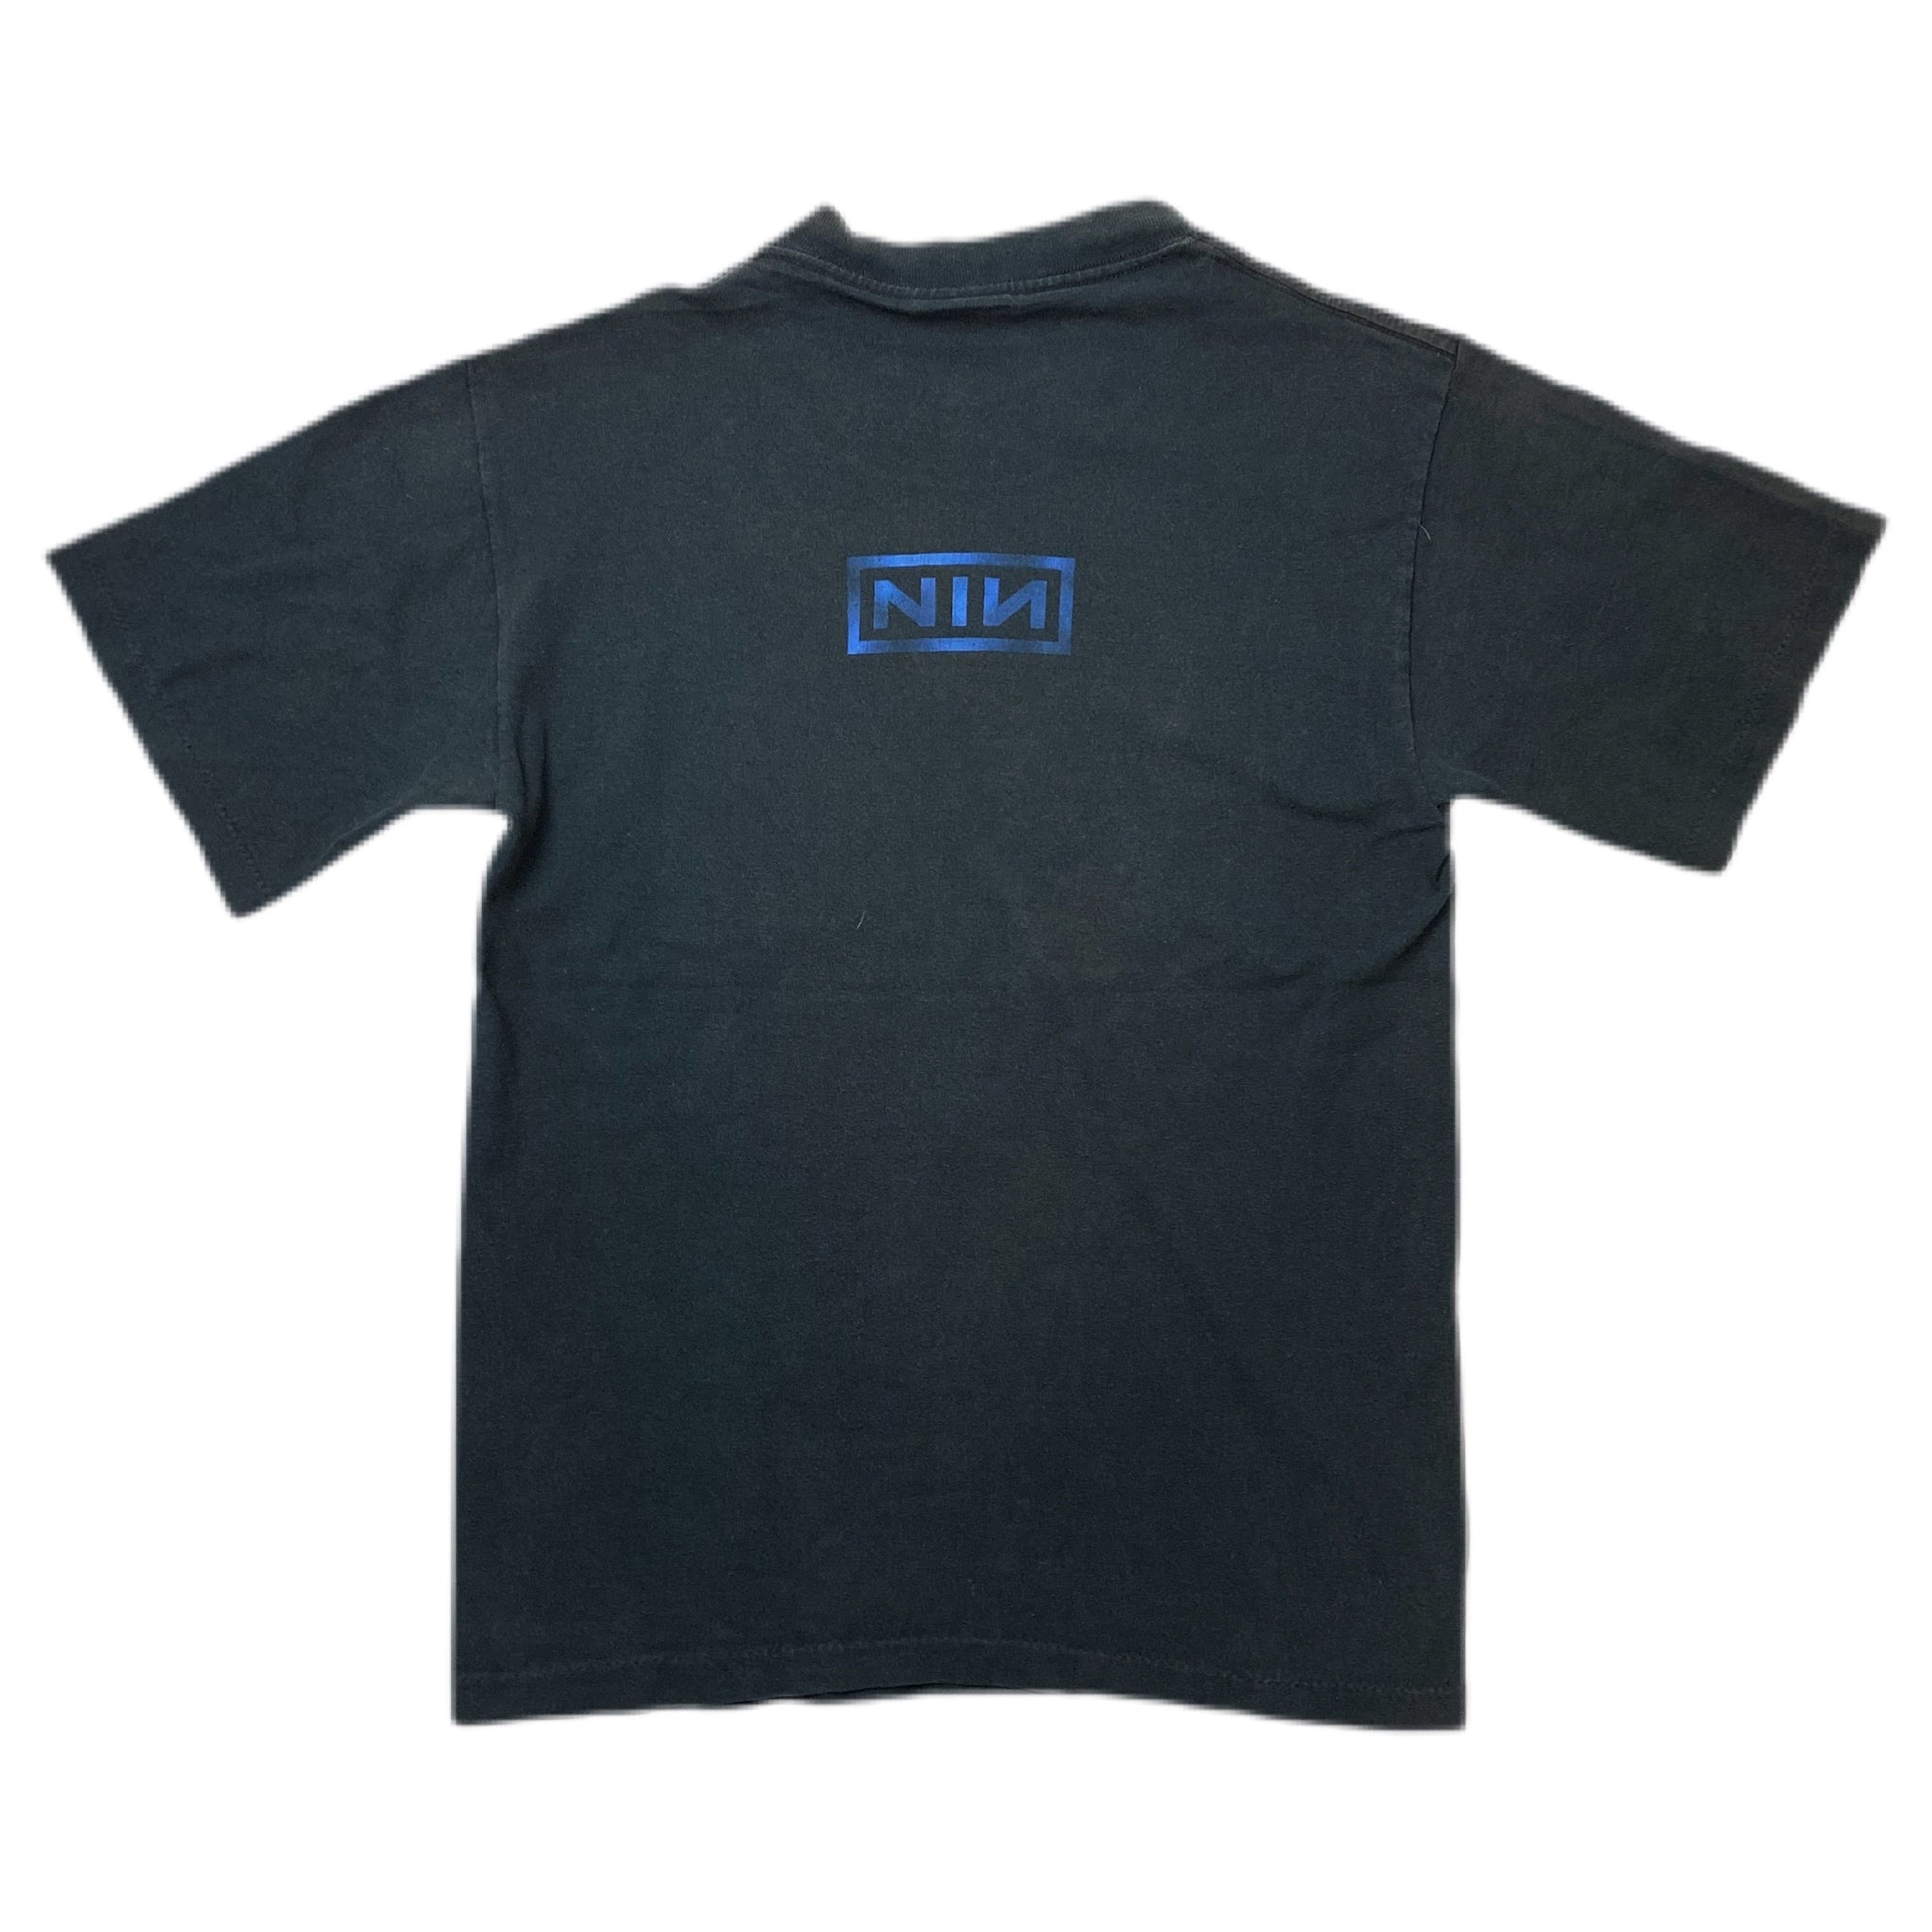 Vintage Nine Inch Nails Shirt Black - Vintage Band Shirt